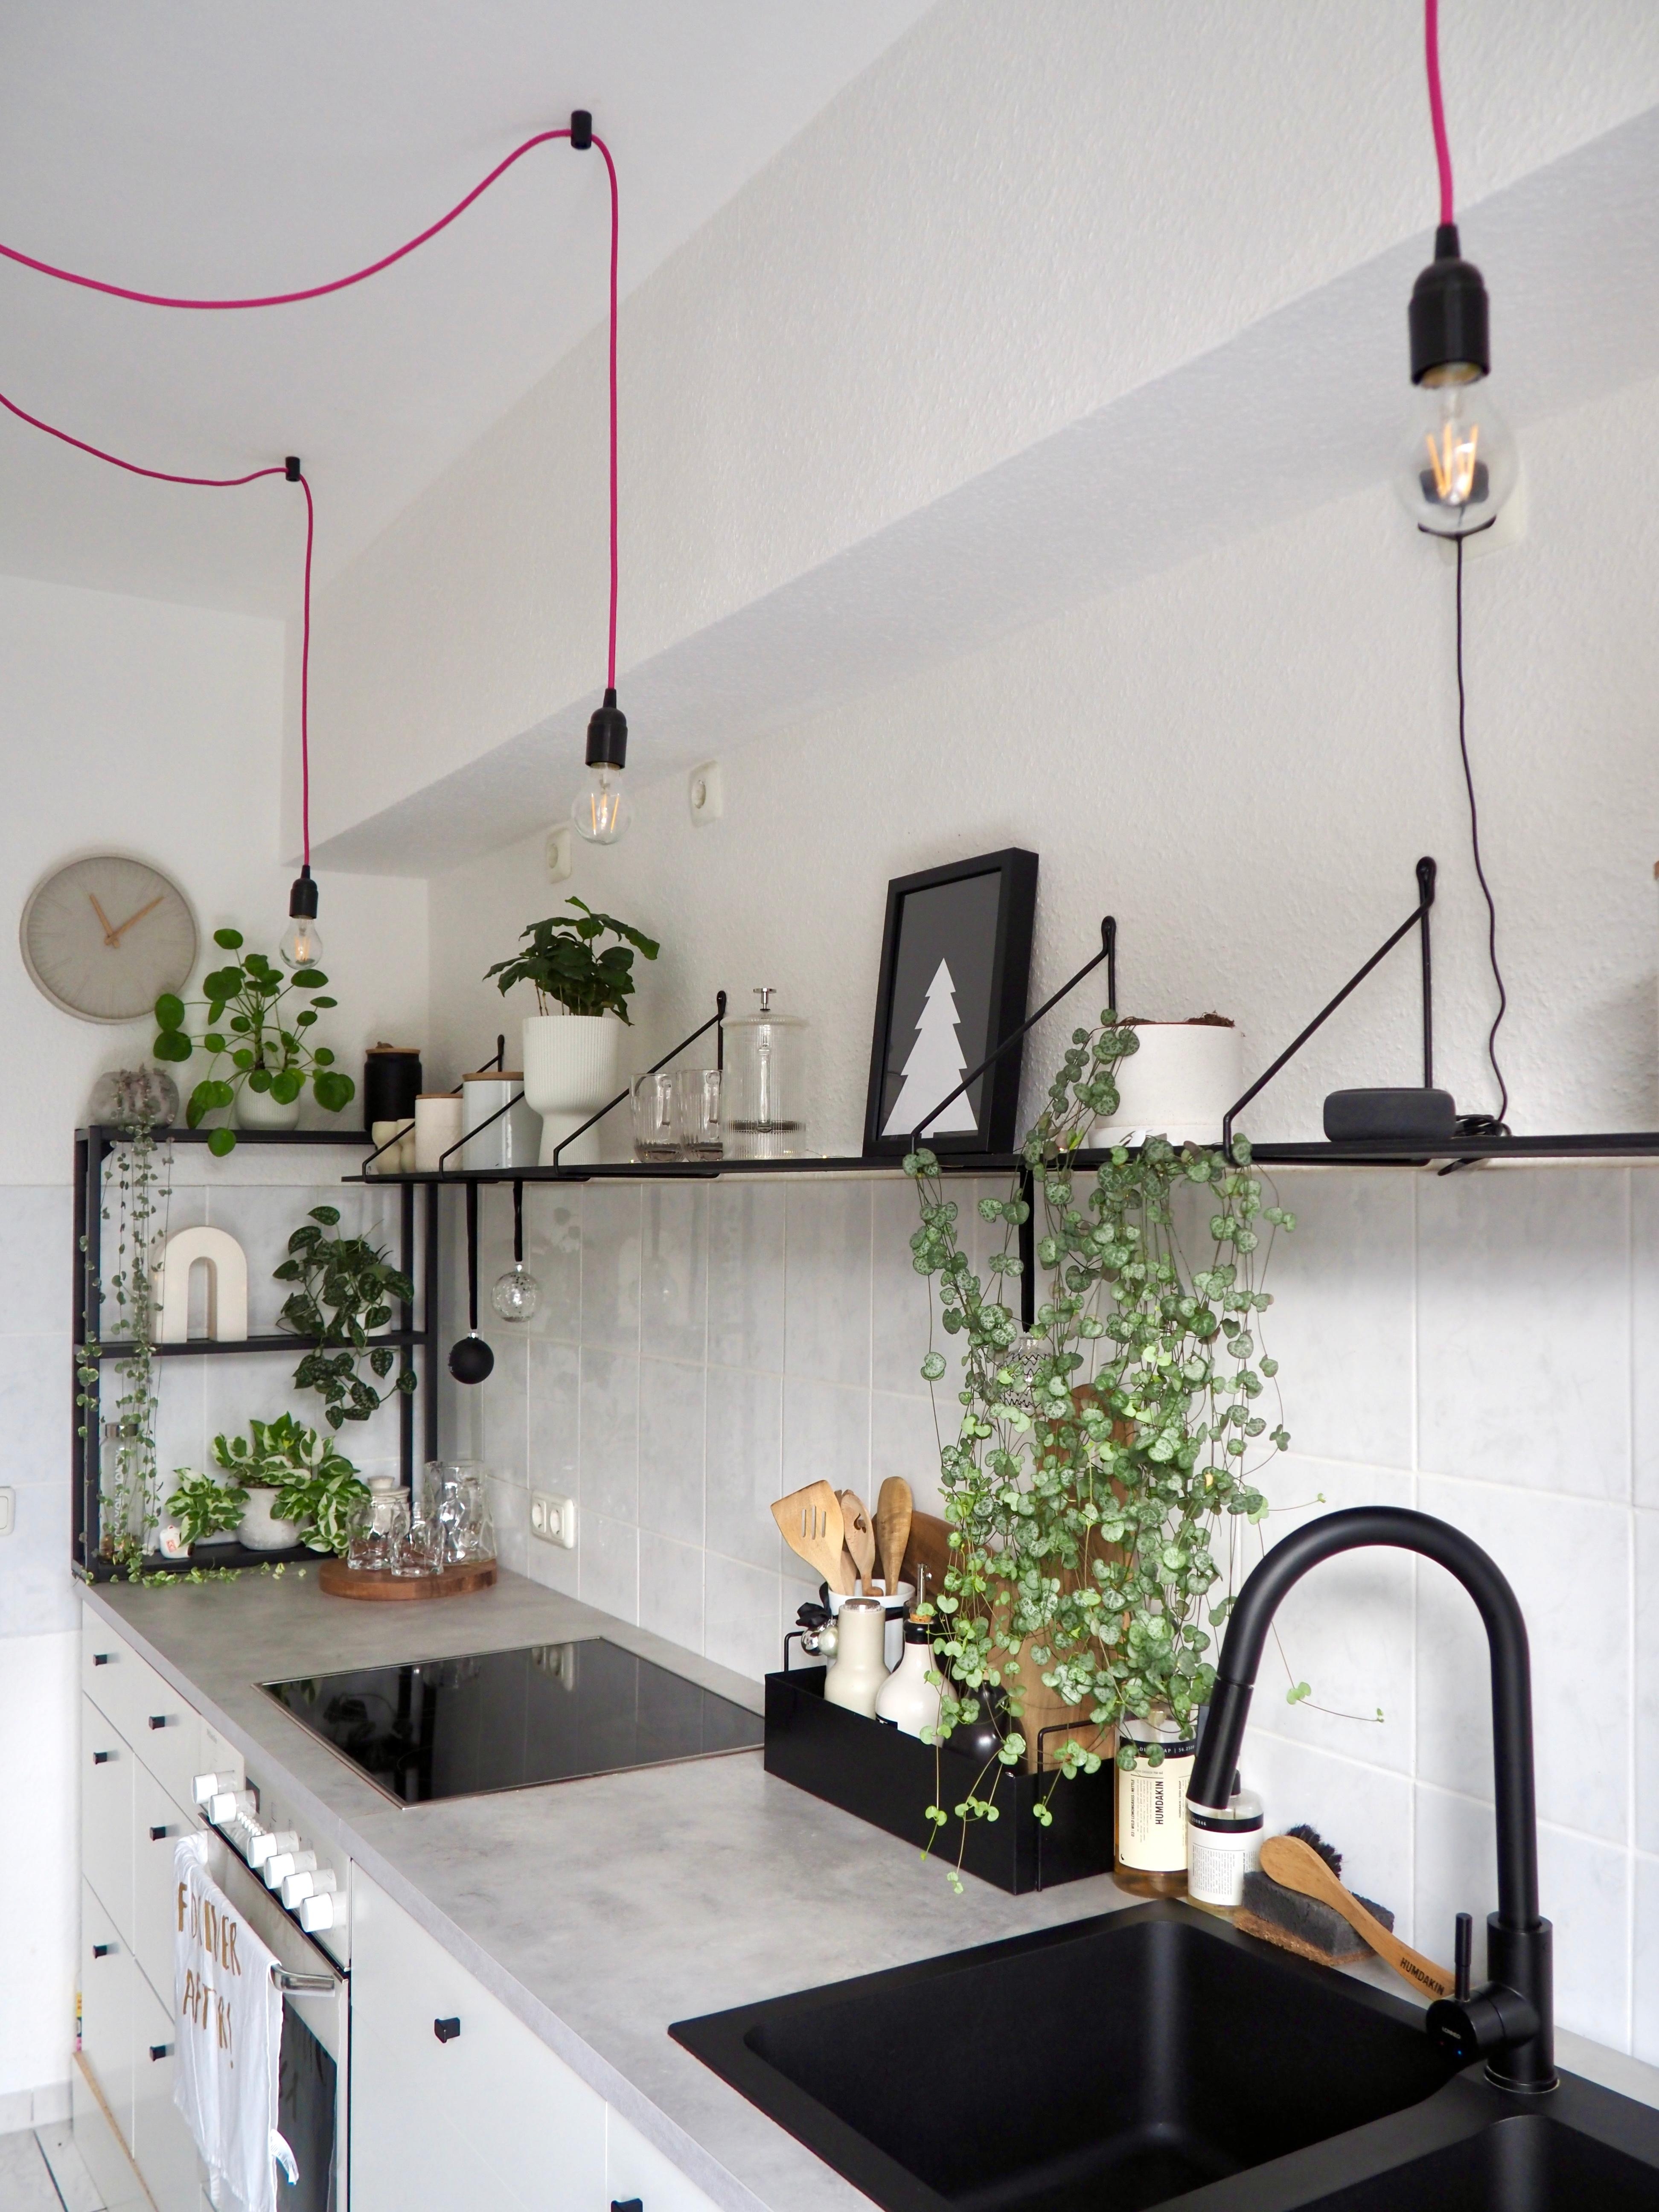 #küche #industrialstyle #beton #shelf #plants #plantshelfie #offeneküche #weißeküche